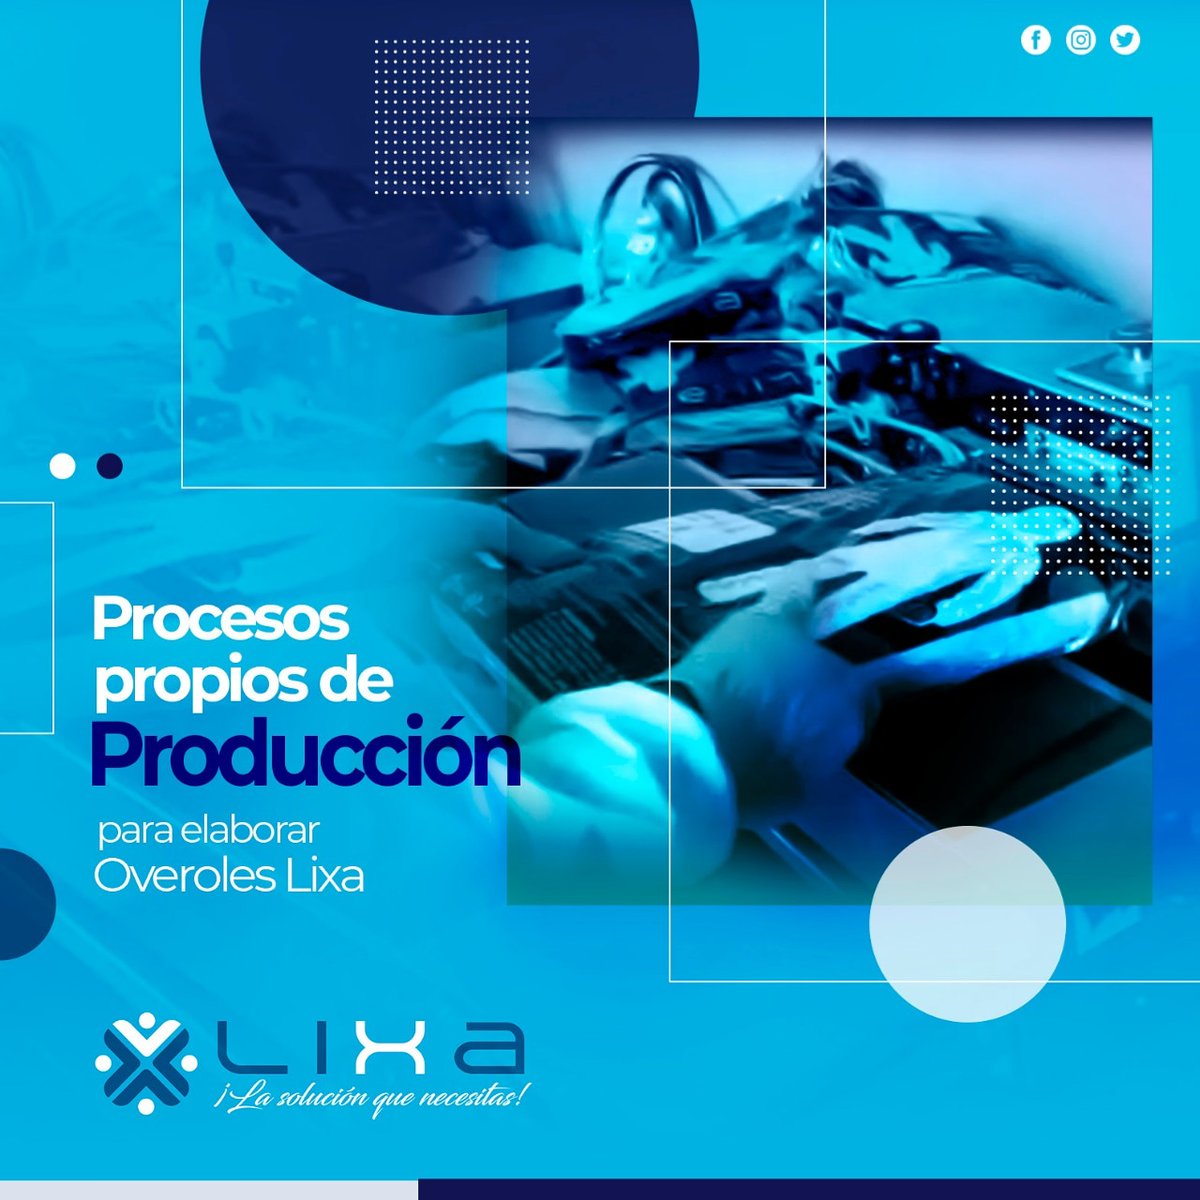 ▶️Los overoles antifluidos #Lixa son elaborados por manos ecuatorianas, bajo standares de nuestra empresa ✅

Cotiza al 📲0962797675

#PrimeroLoNuestro #Pymes #ManosEcuatorianas #OverolesLixa #ProductoEstrella